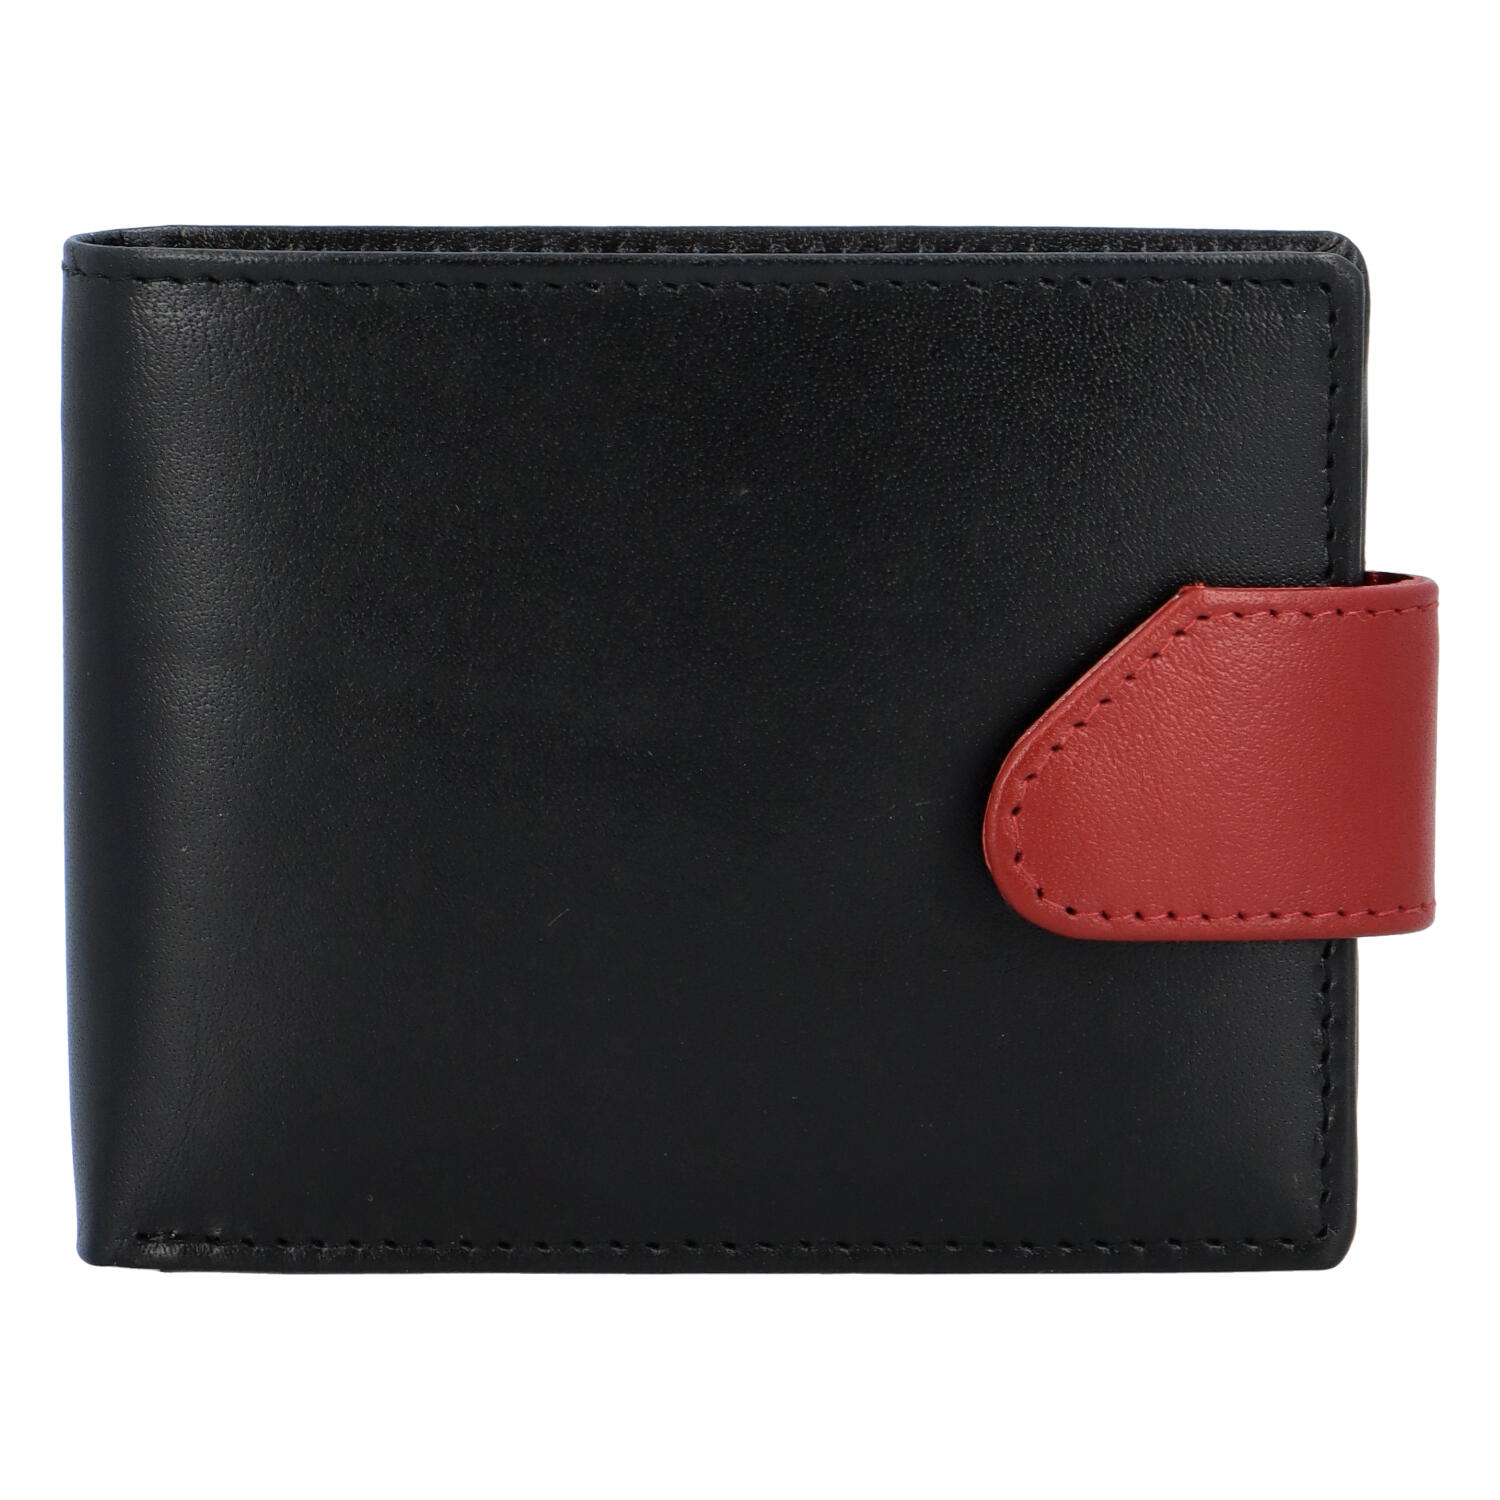 Hladká pánská černo červená kožená peněženka - Tomas 76VT